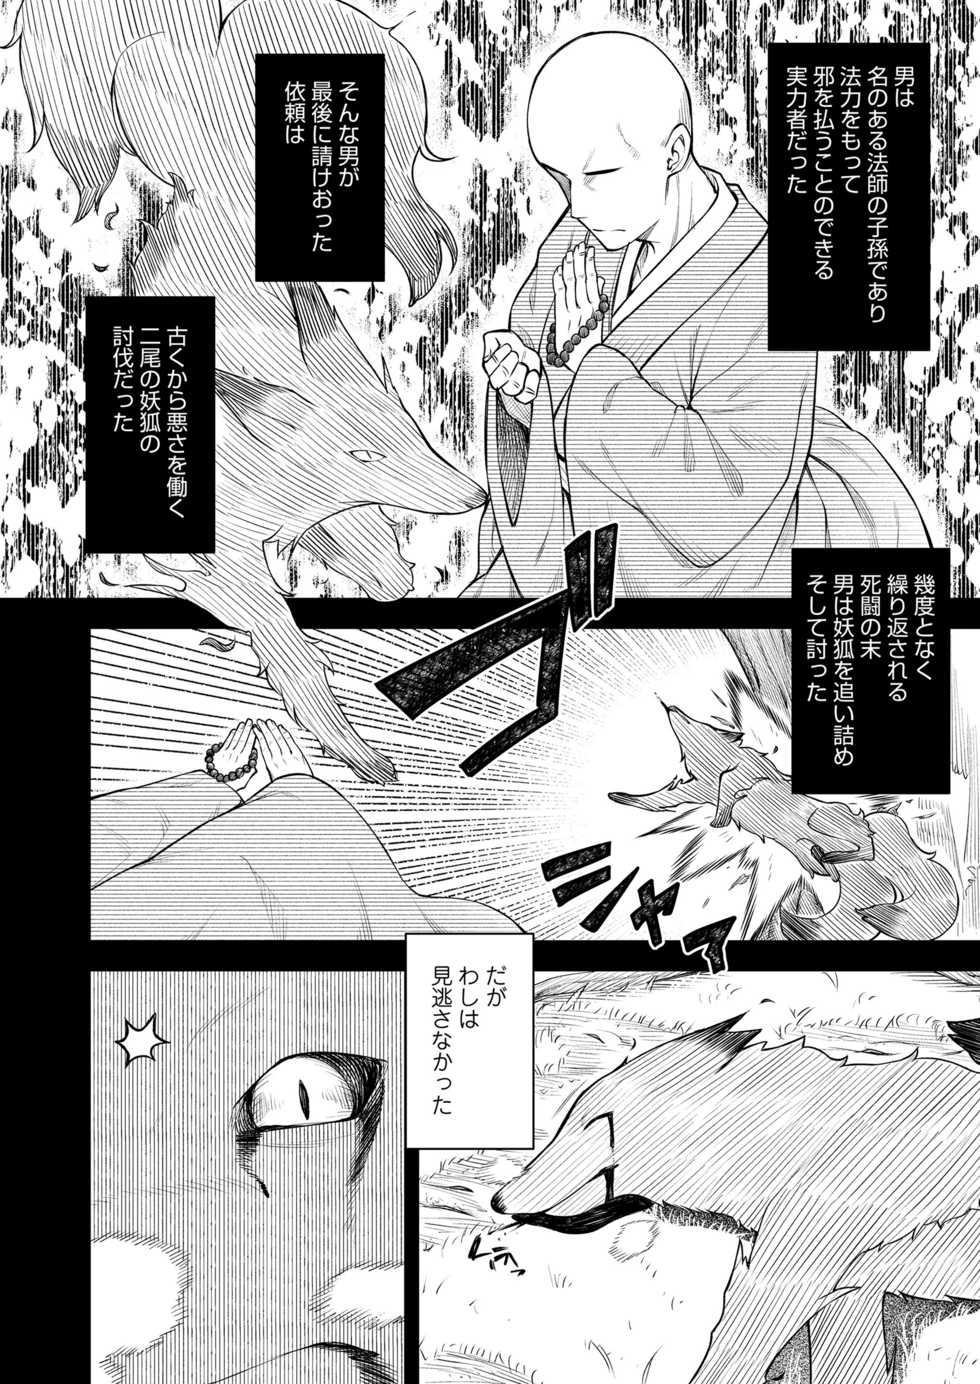 Towako 10 [Digital] - Page 32